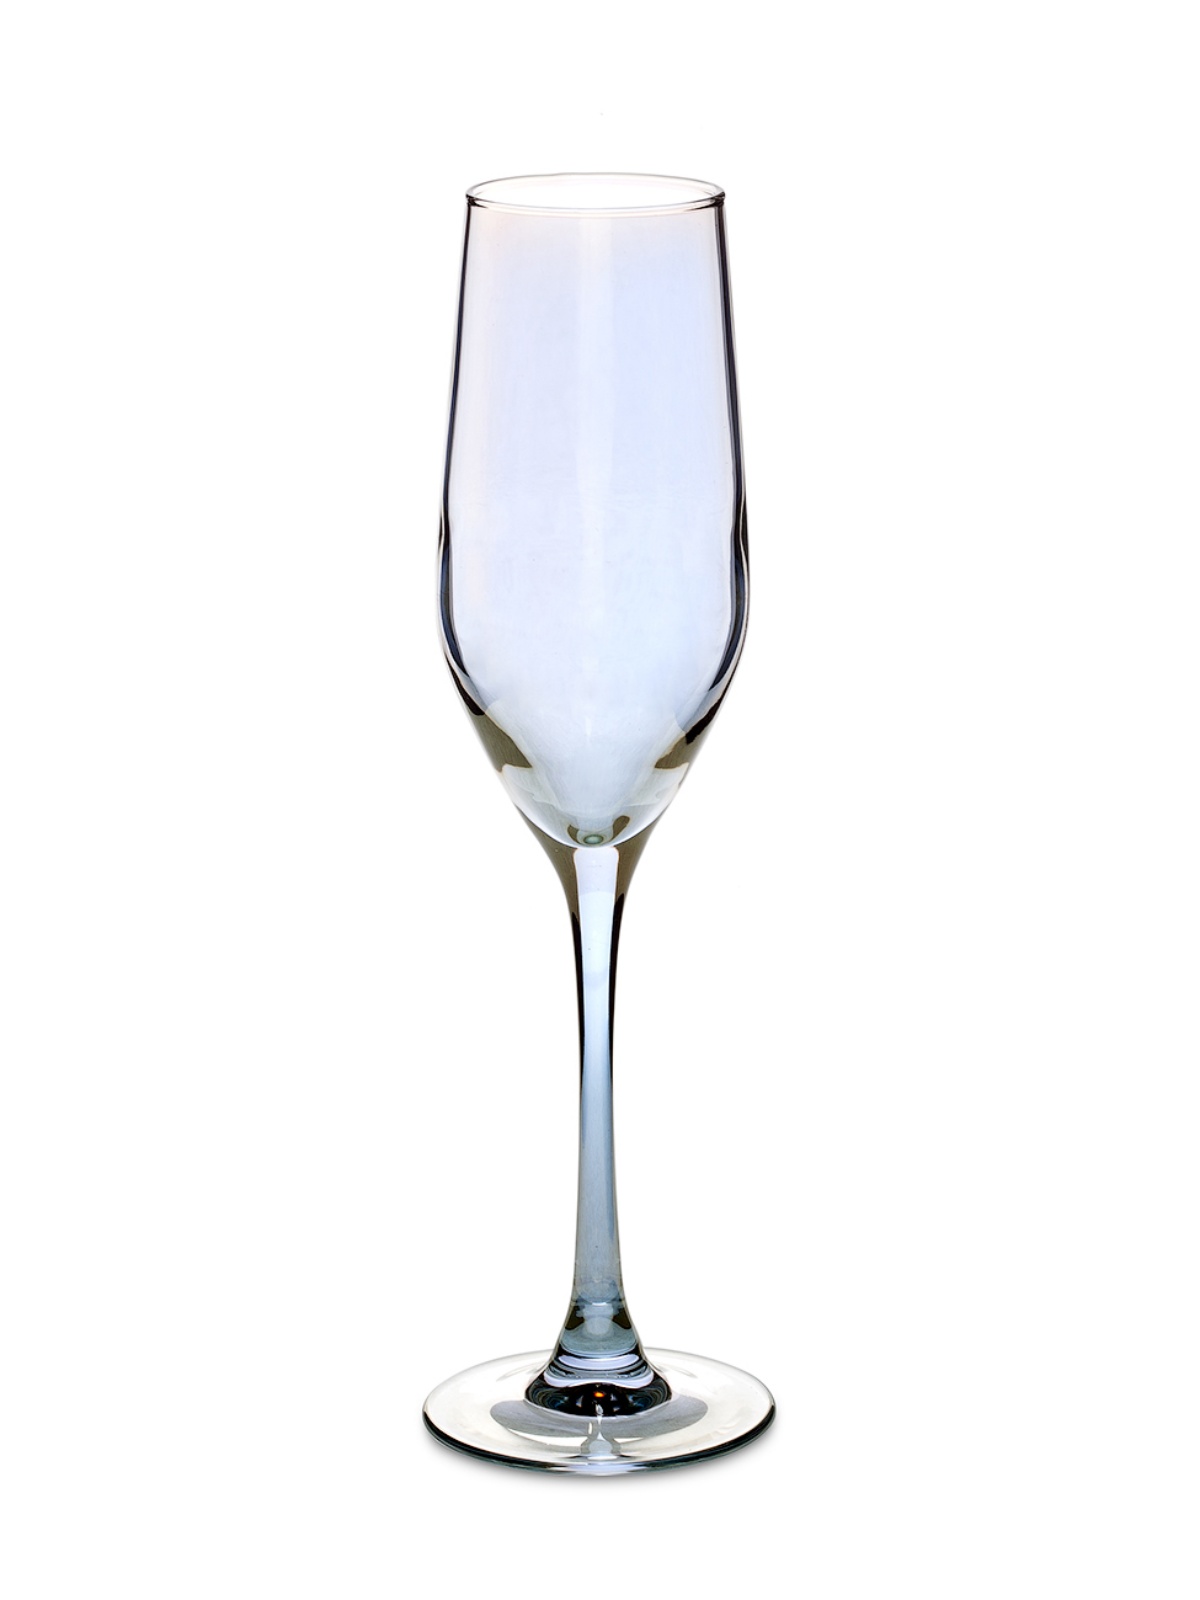 Набор бокалов для шампанского СЕЛЕСТ ЗОЛОТИСТЫЙ ХАМЕЛЕОН 6шт 160мл LUMINARC P1636 бокалы для игристых вин 2 шт vacu vin 7649960